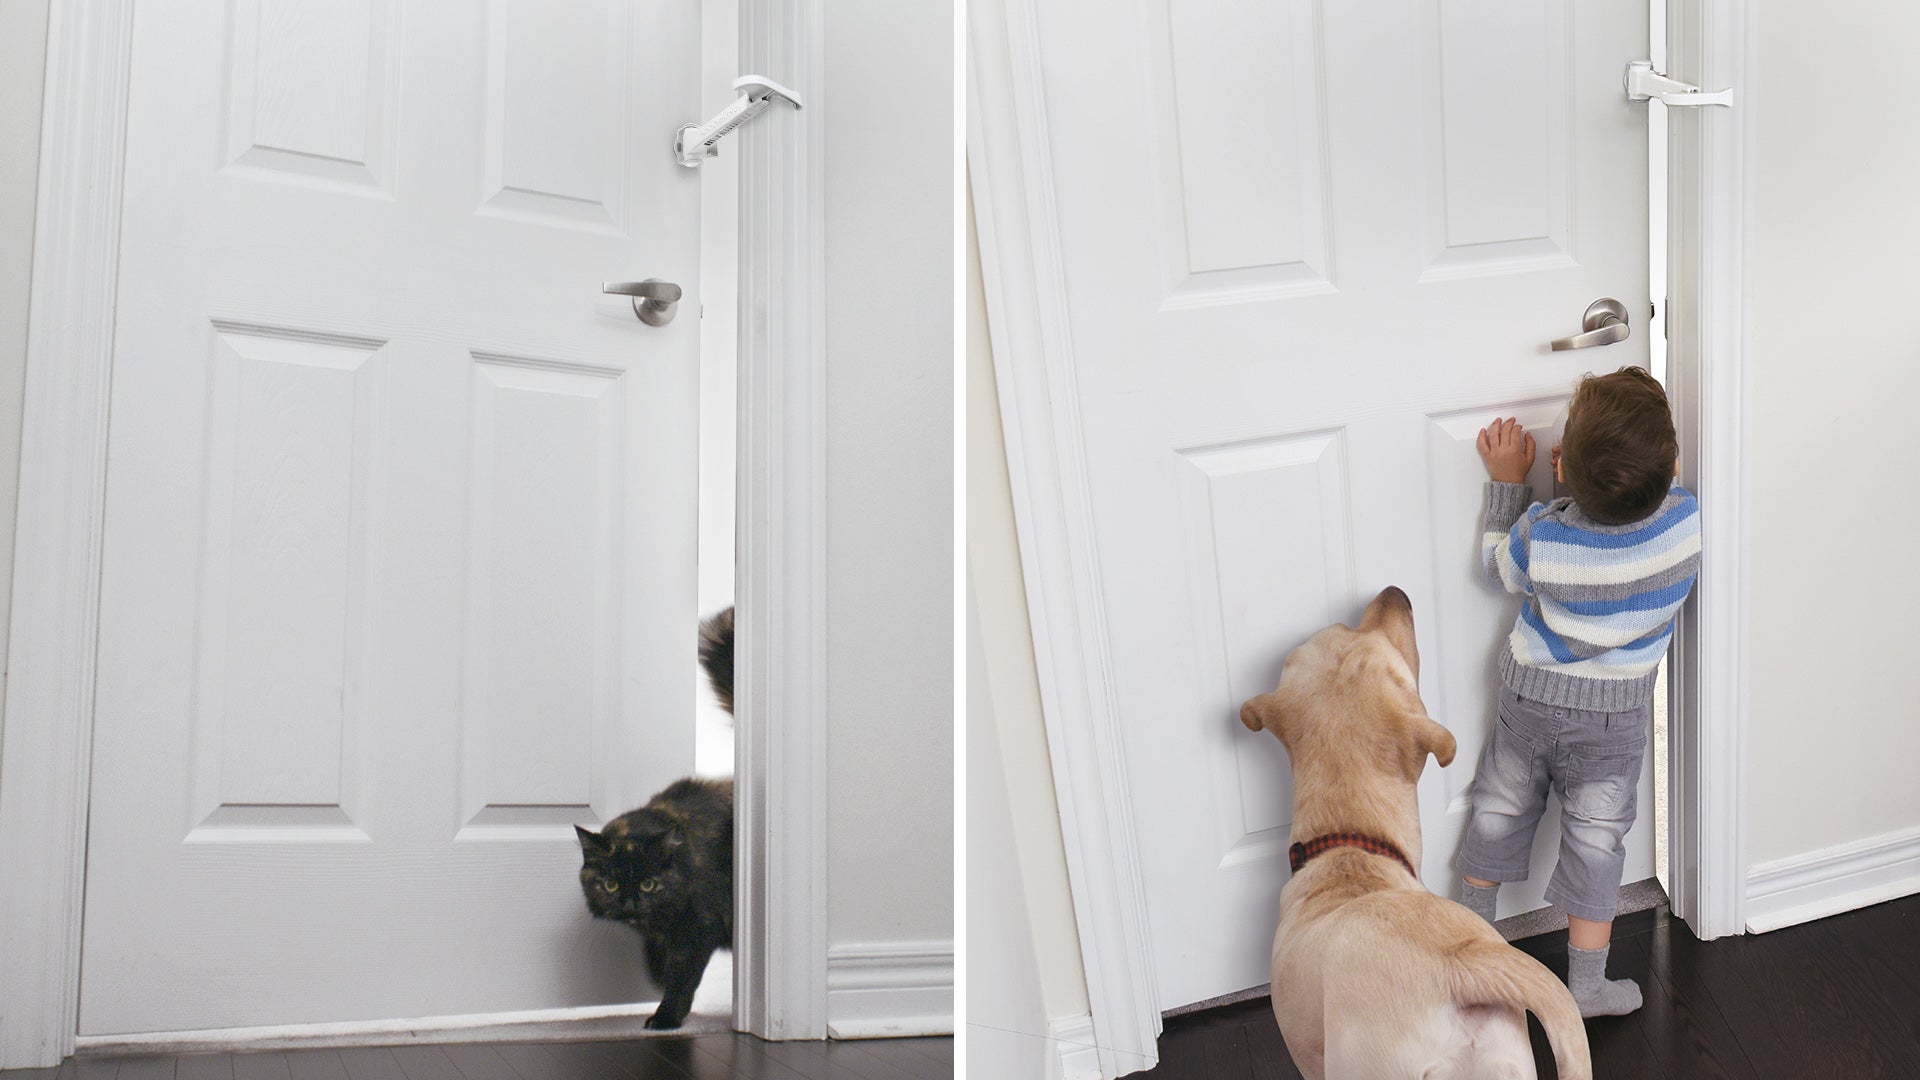 Load video: DOORWING portable door lock and door stopper door guard for child proofing and pet proofing doors